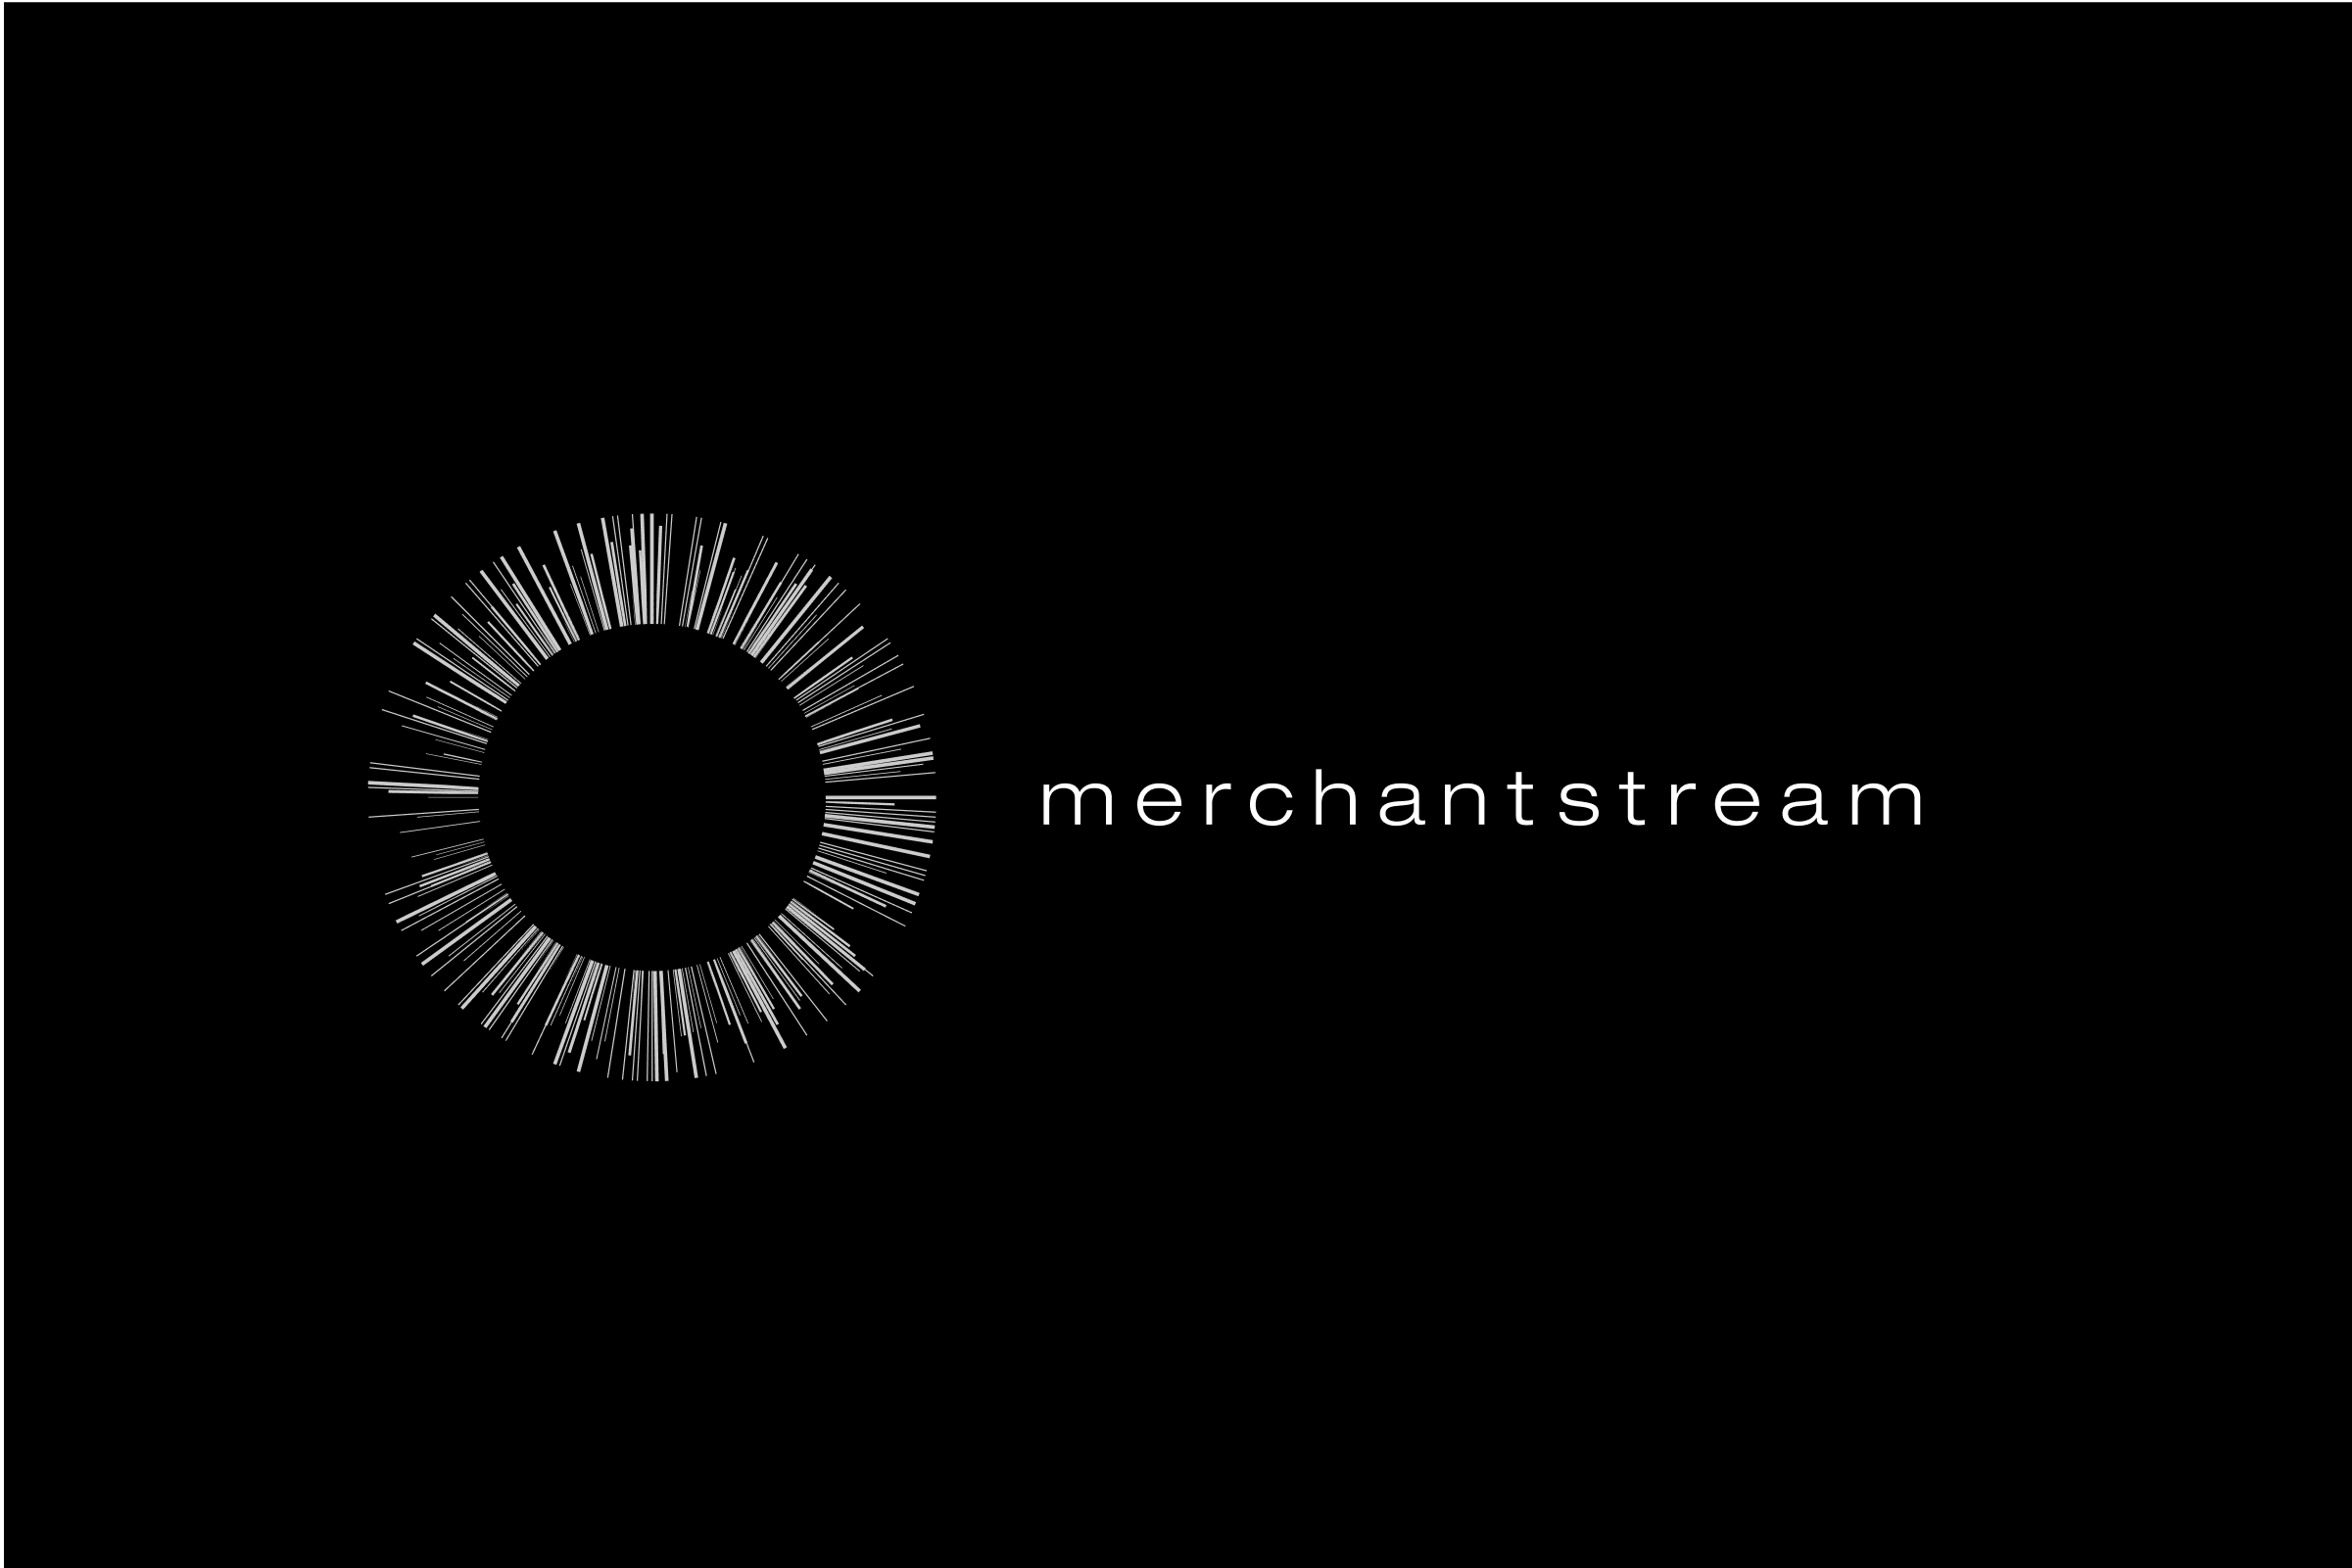 simon-p-coyle-branding-logo-design-2012-merchantstream